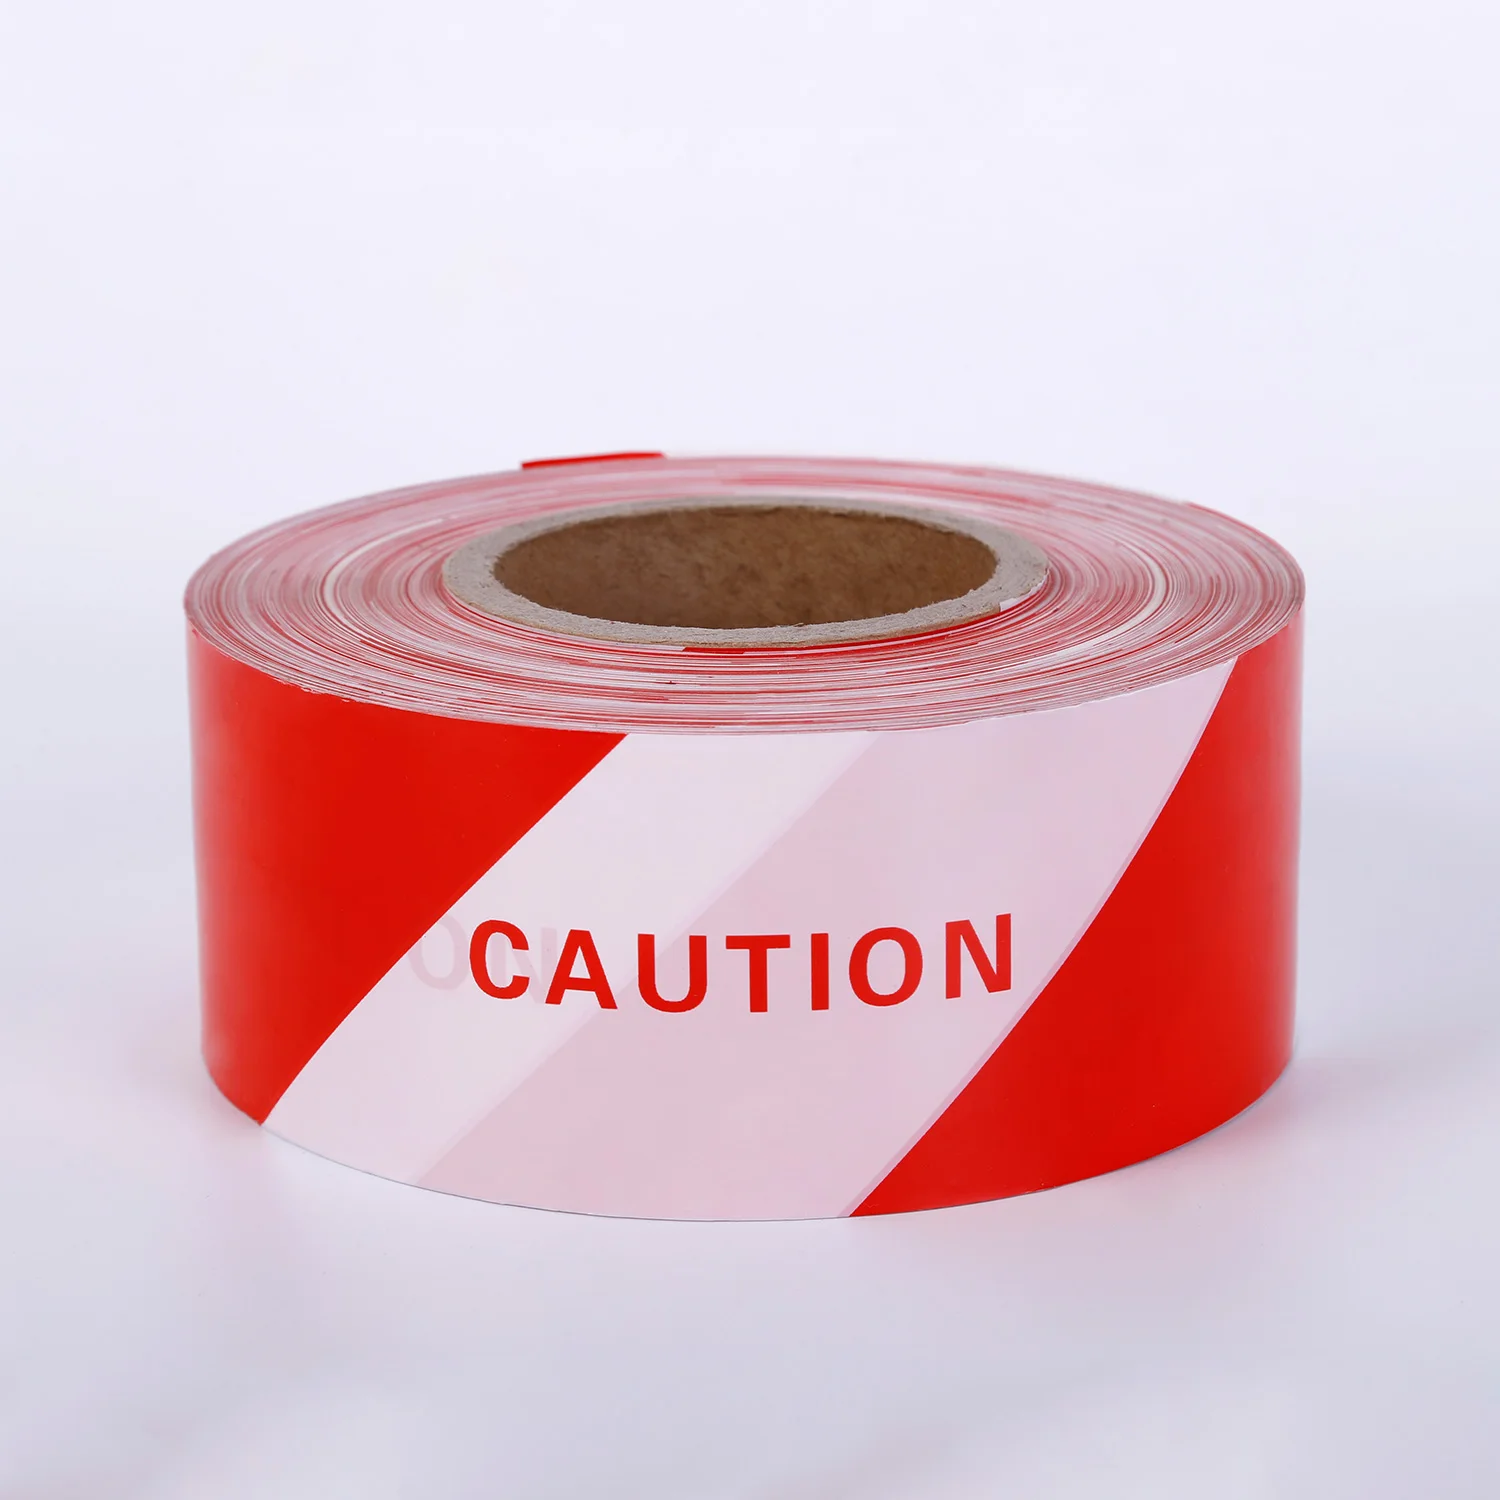 Retractable caution tape - jokerdx